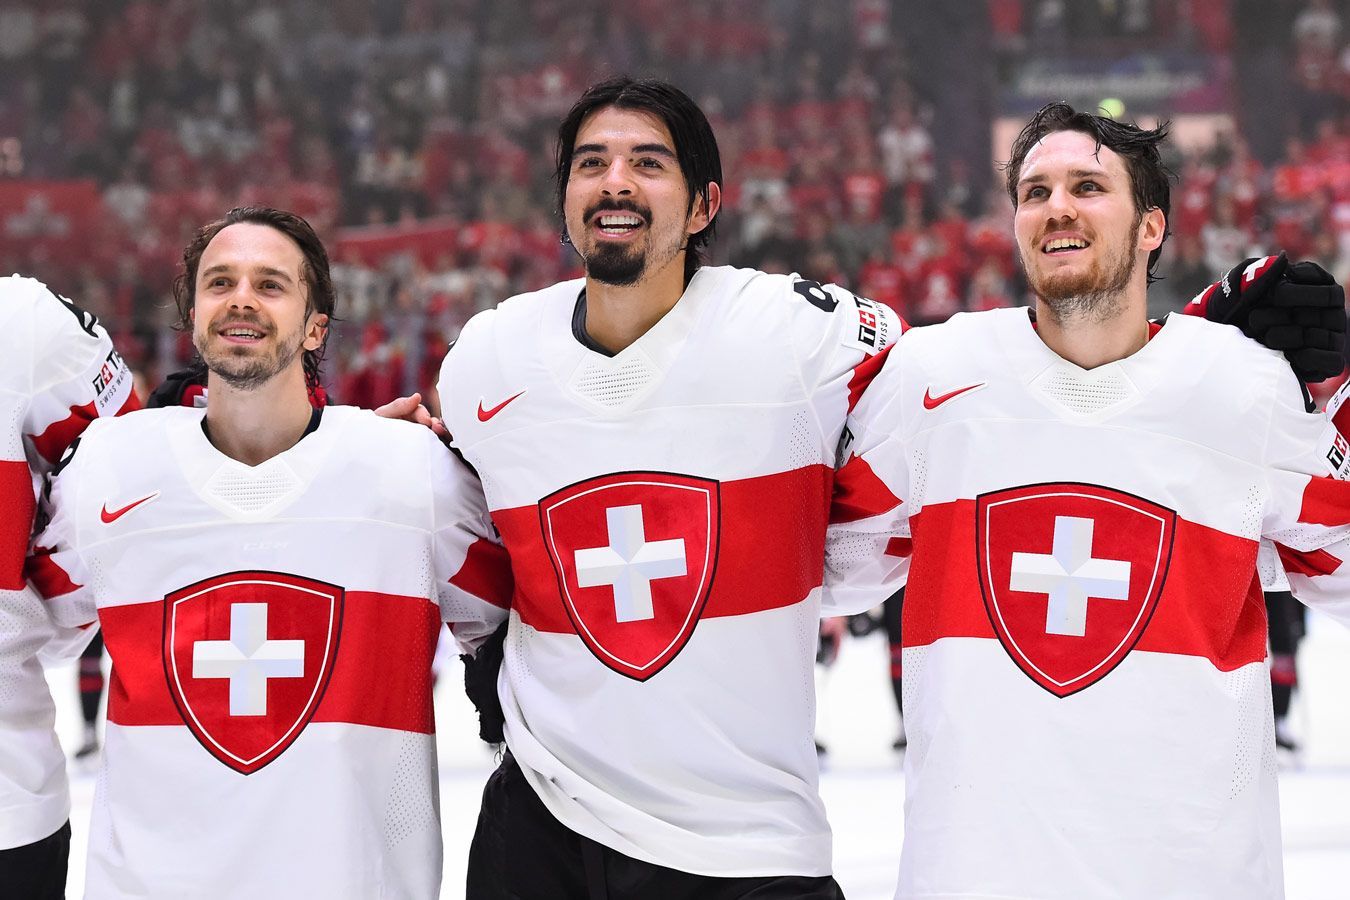 Швейцария — США прогноз на матч 26 мая на ЧМ-2022 по хоккею: ставки и коэффициенты на игру